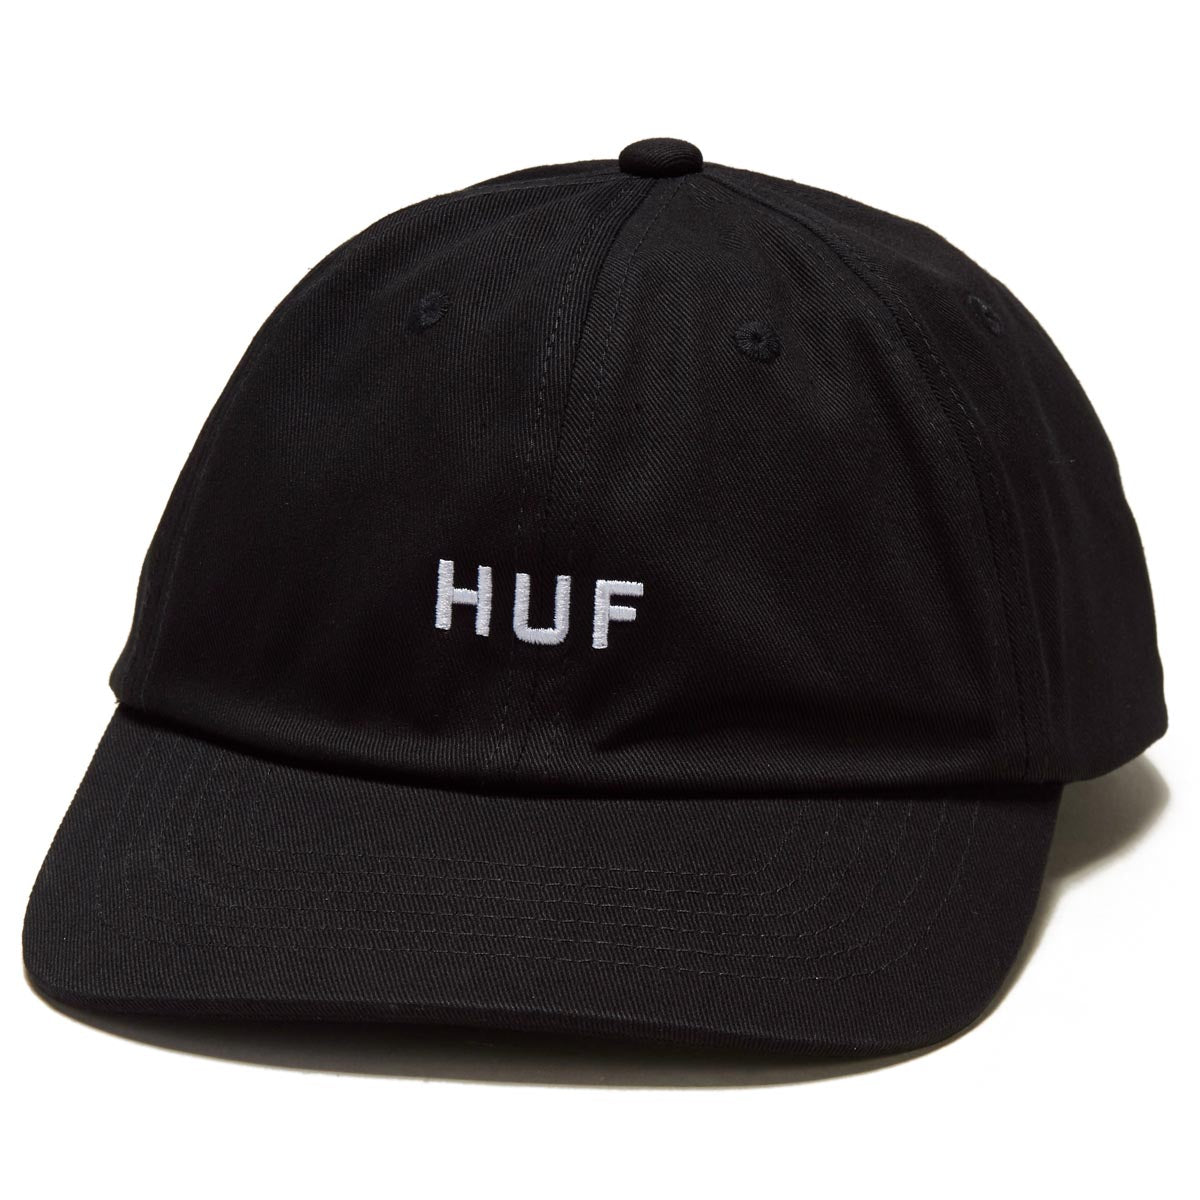 HUF Set Og Cv 6 Panel Hat - Black image 1